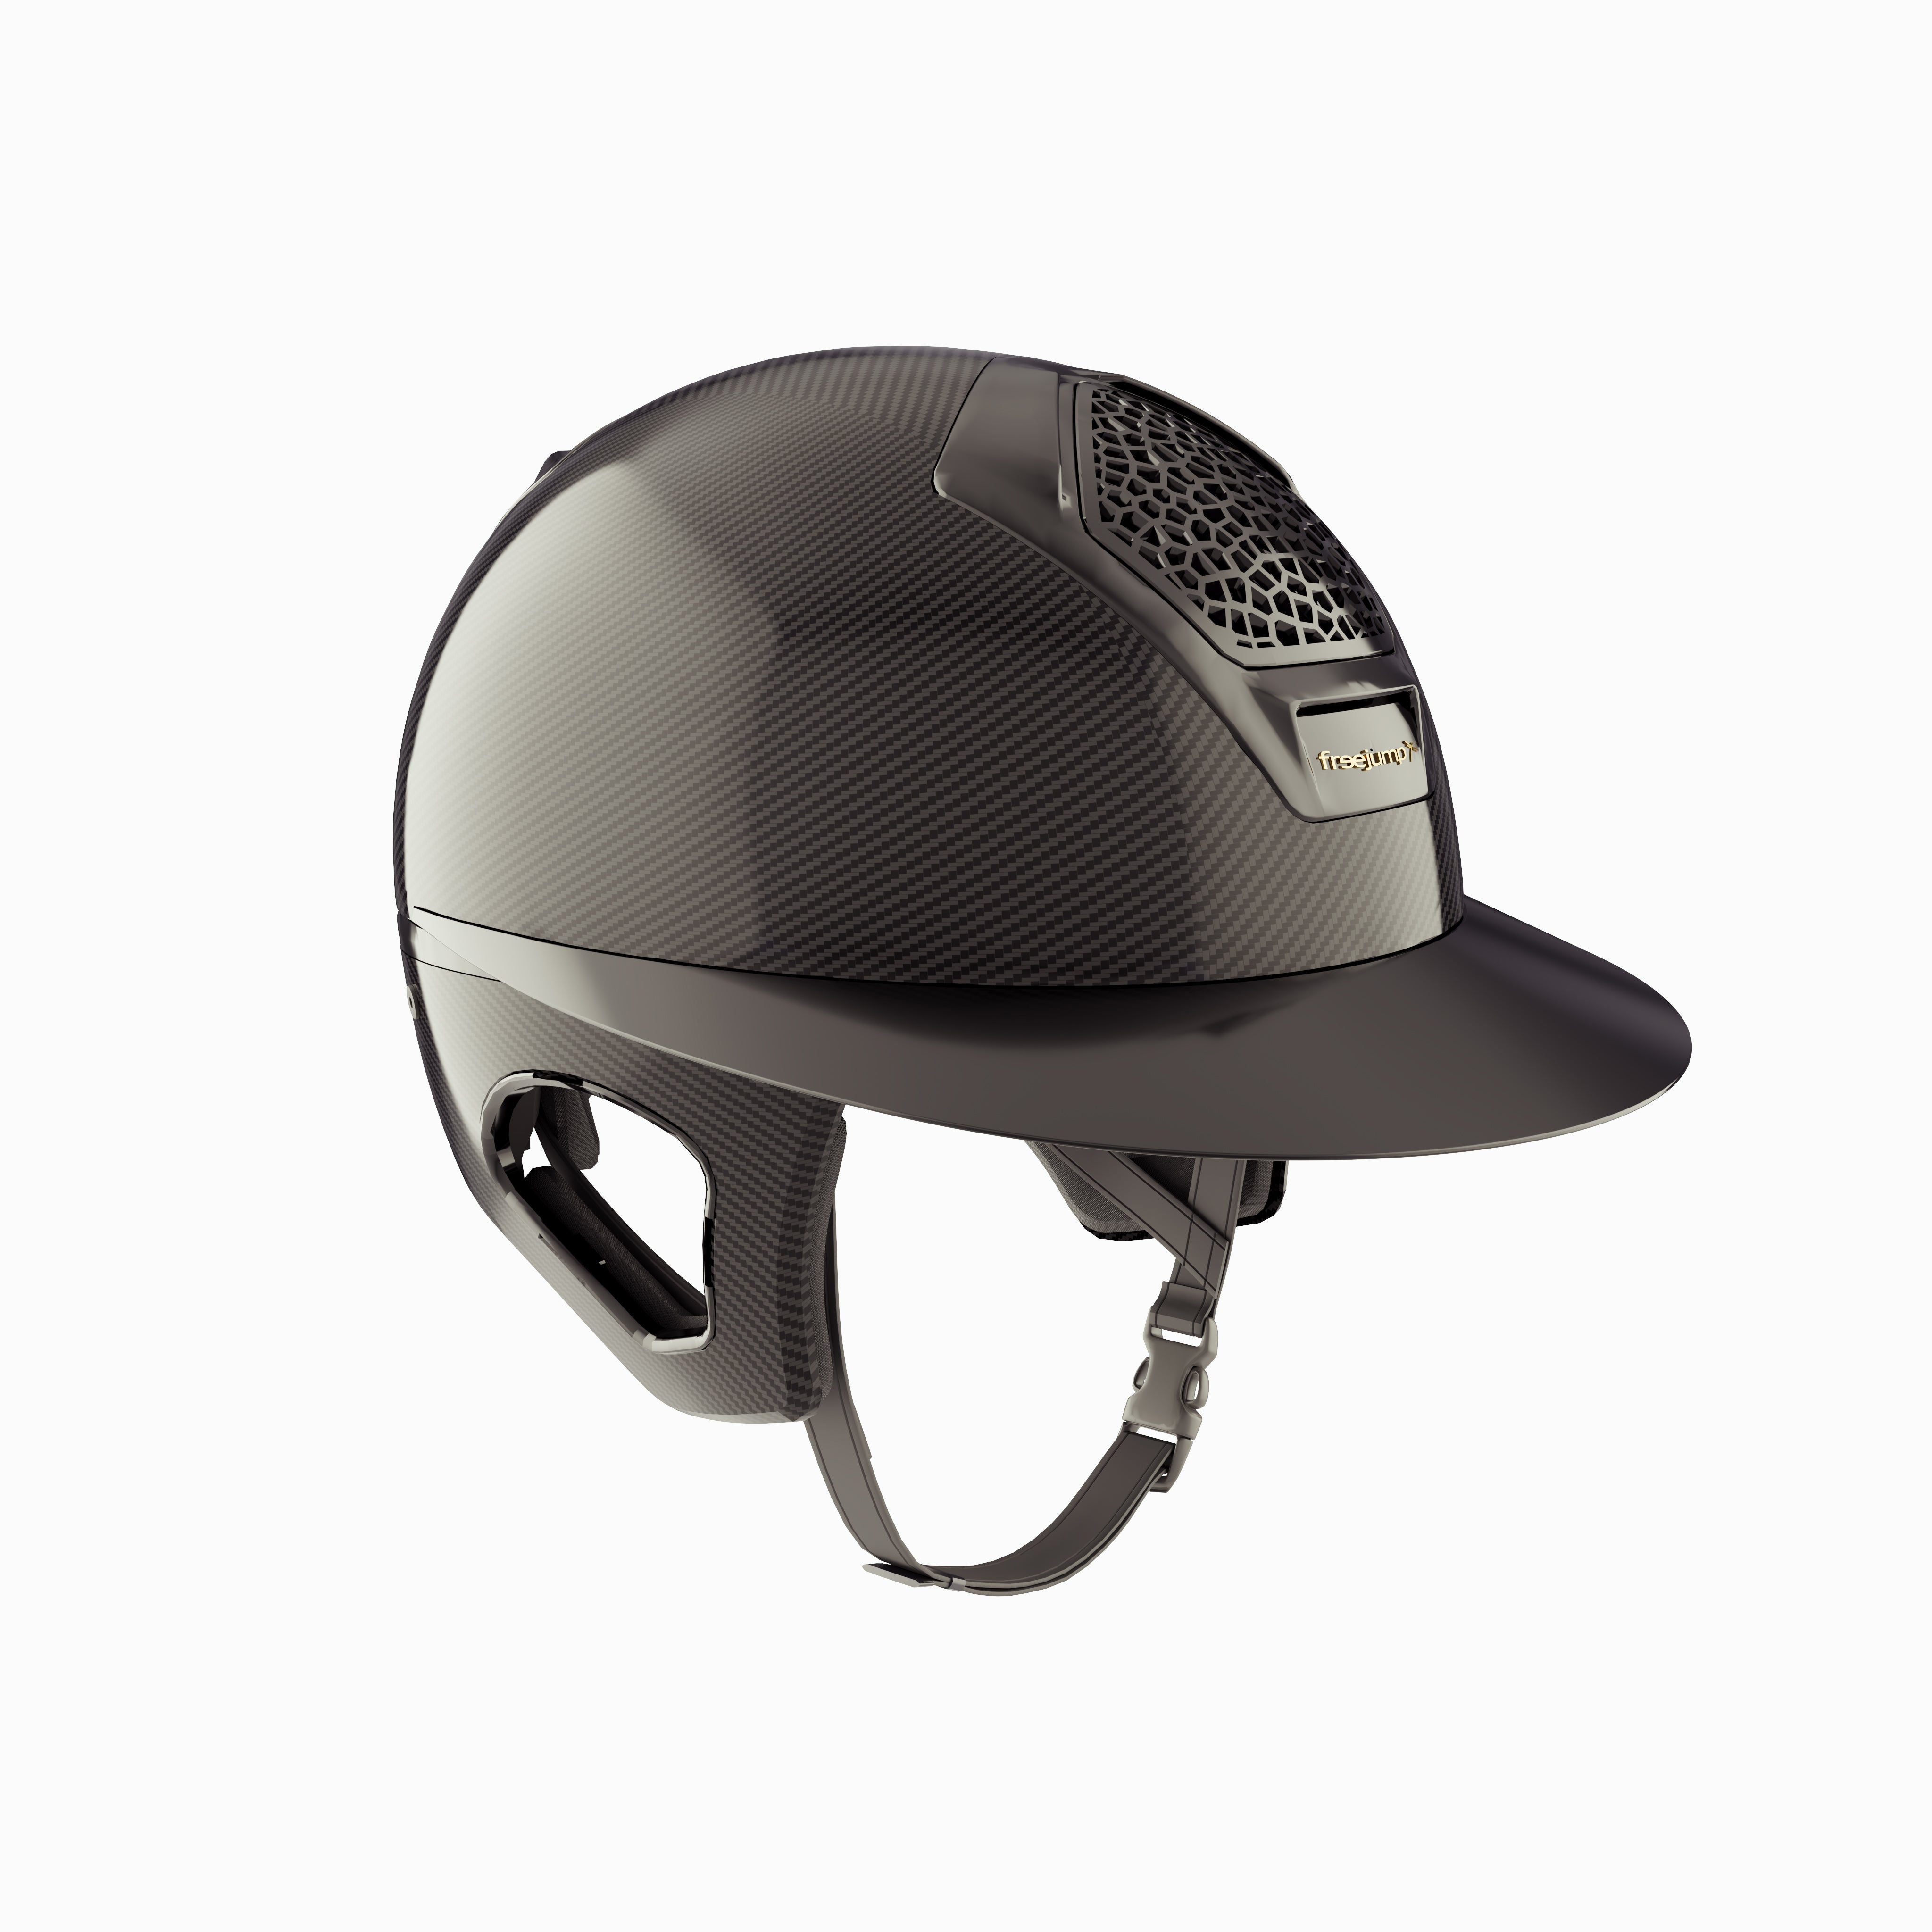 PRE-ORDER Voronoï Carbon Helmet With Temple Protection - Black